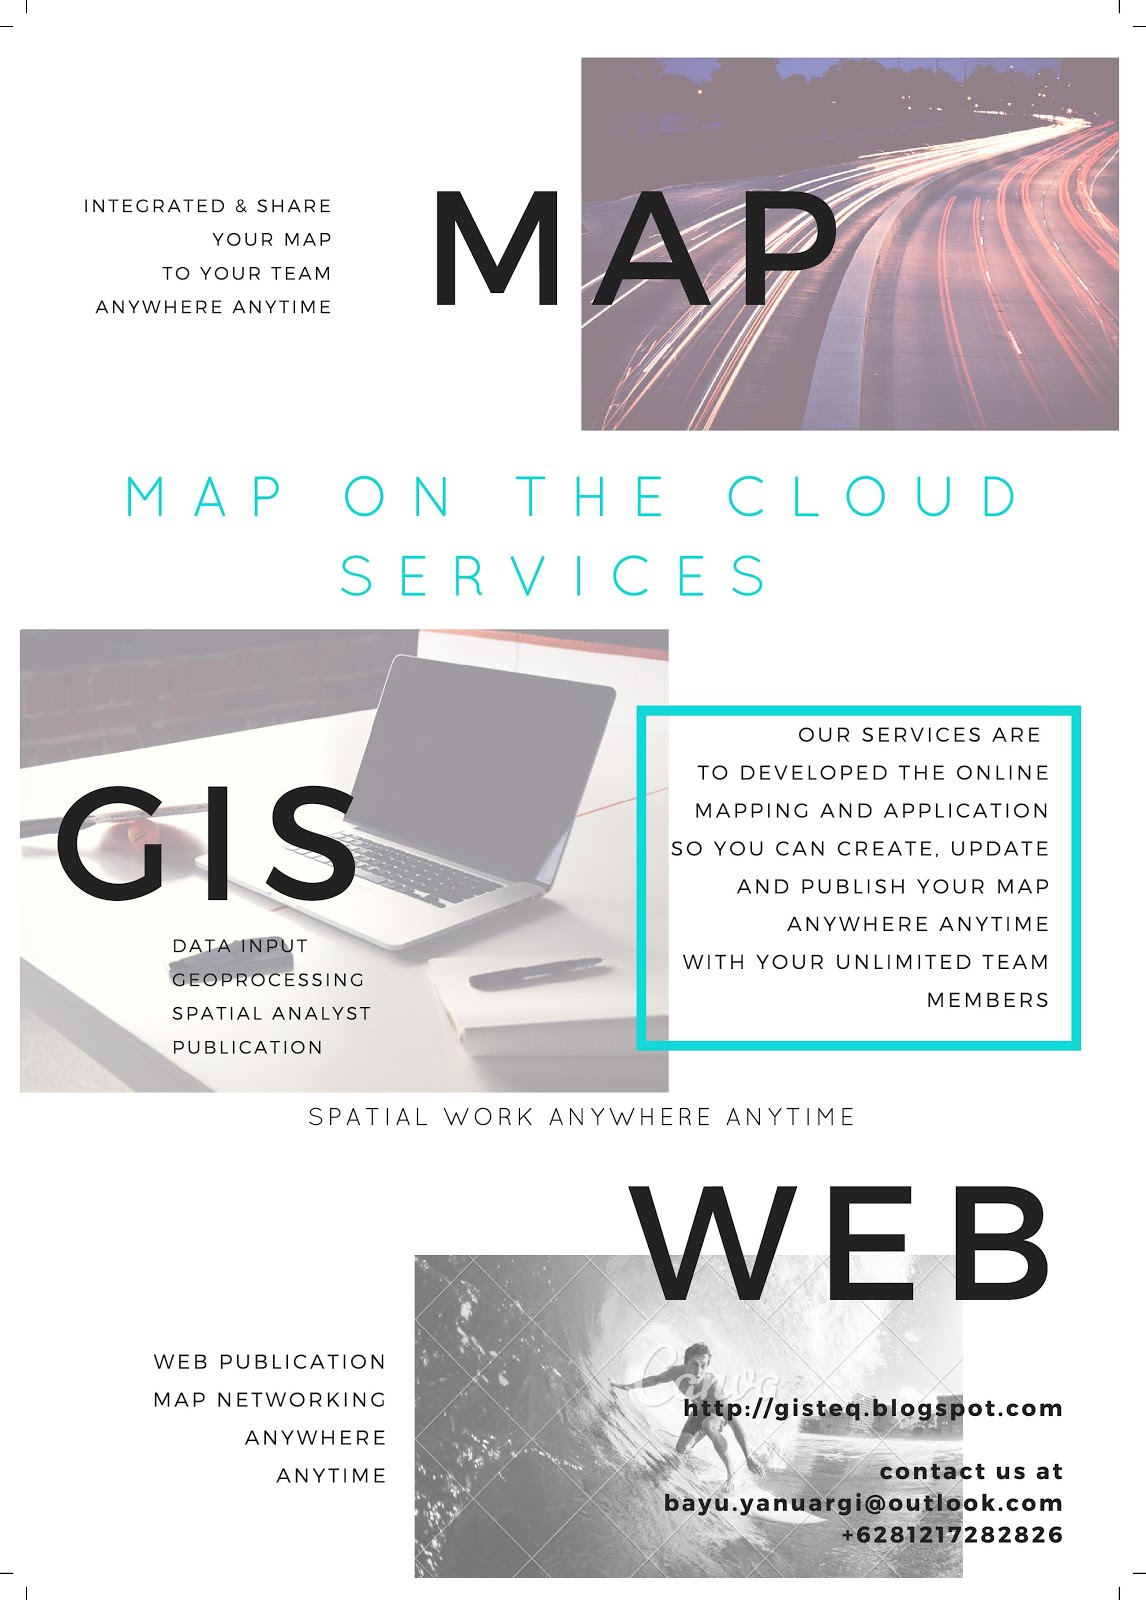 WEBGIS Services